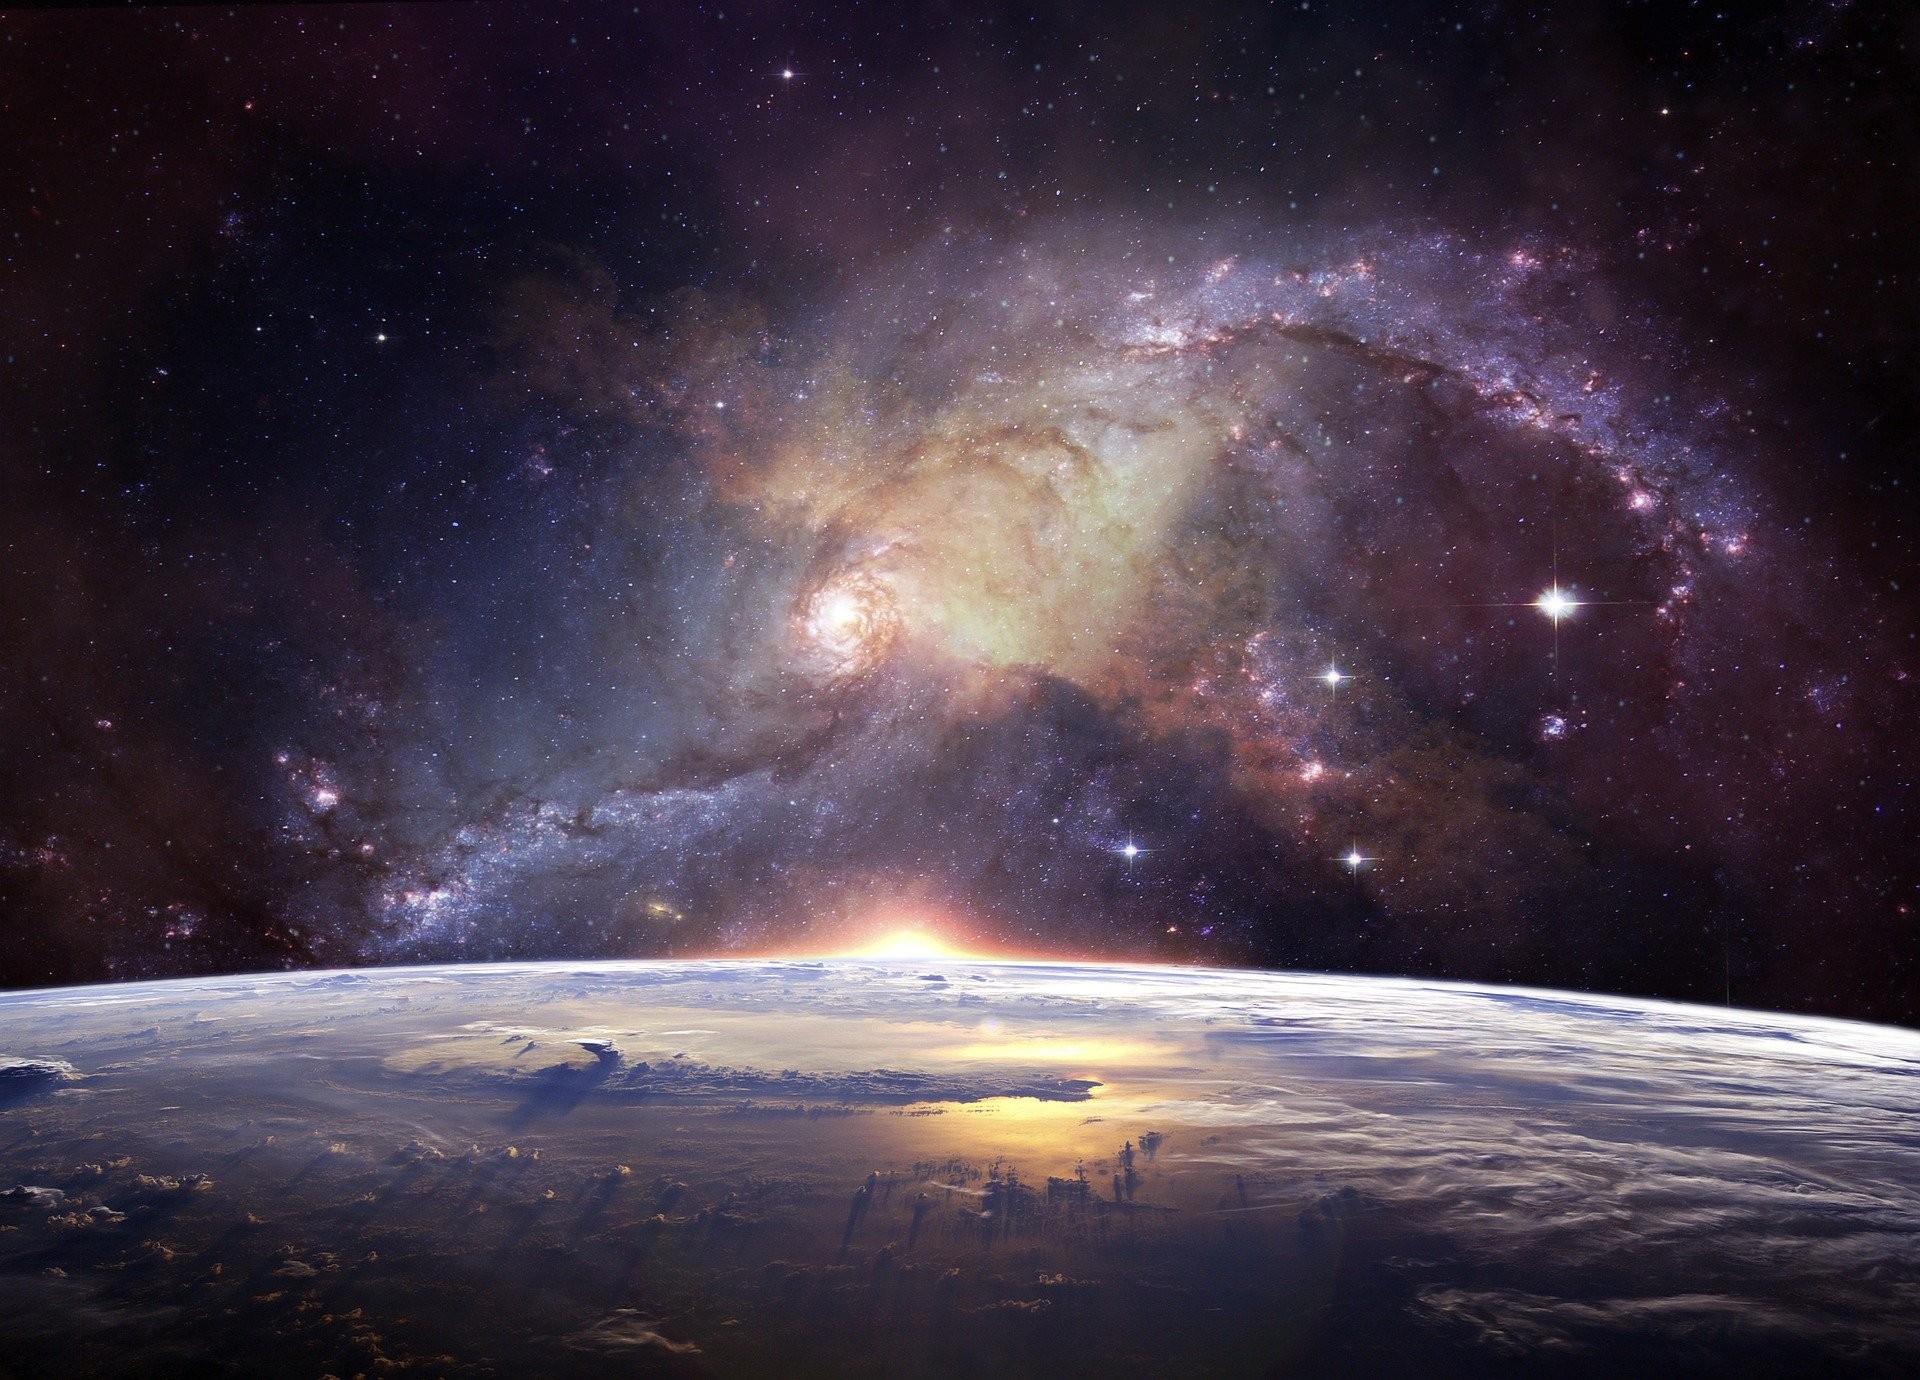 O telescópio James Webb é motivo de entusiasmo entre astrônomos por poder ajudar a determinar como estrelas e galáxias surgiram  (Foto: Pixabay)